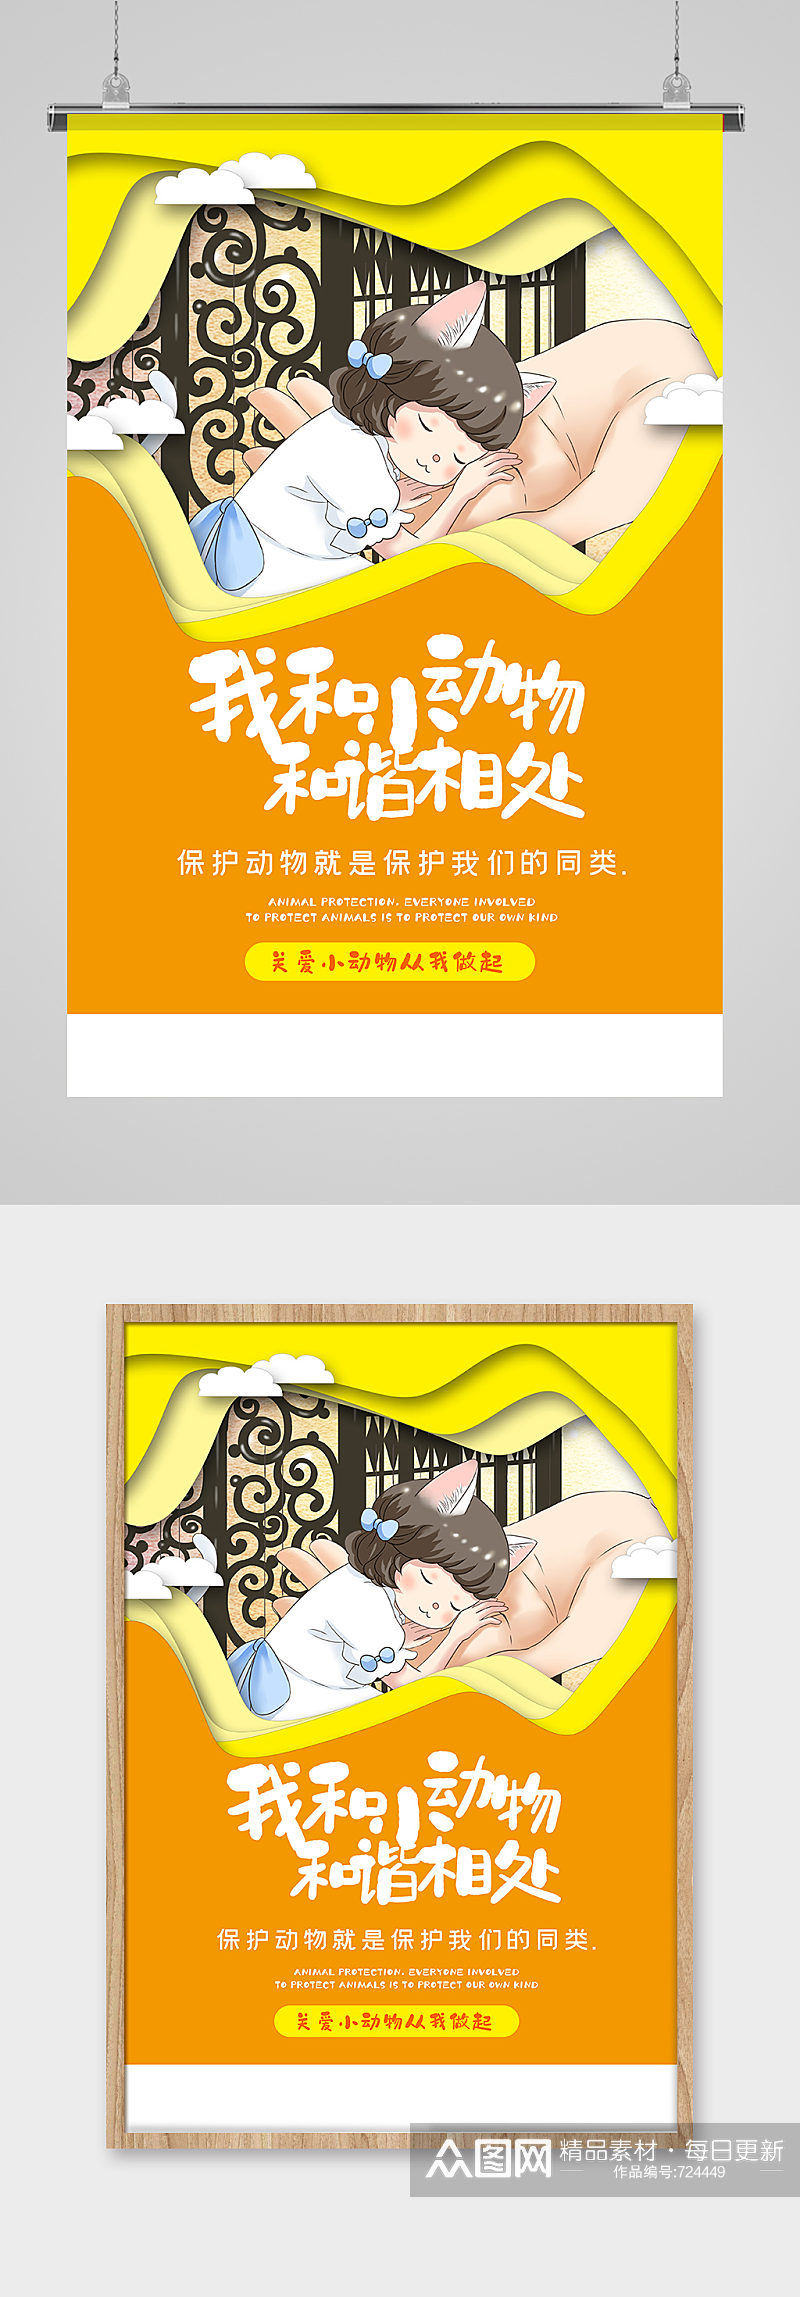 暖黄色剪纸风保护小动物主题保护动物海报海报素材